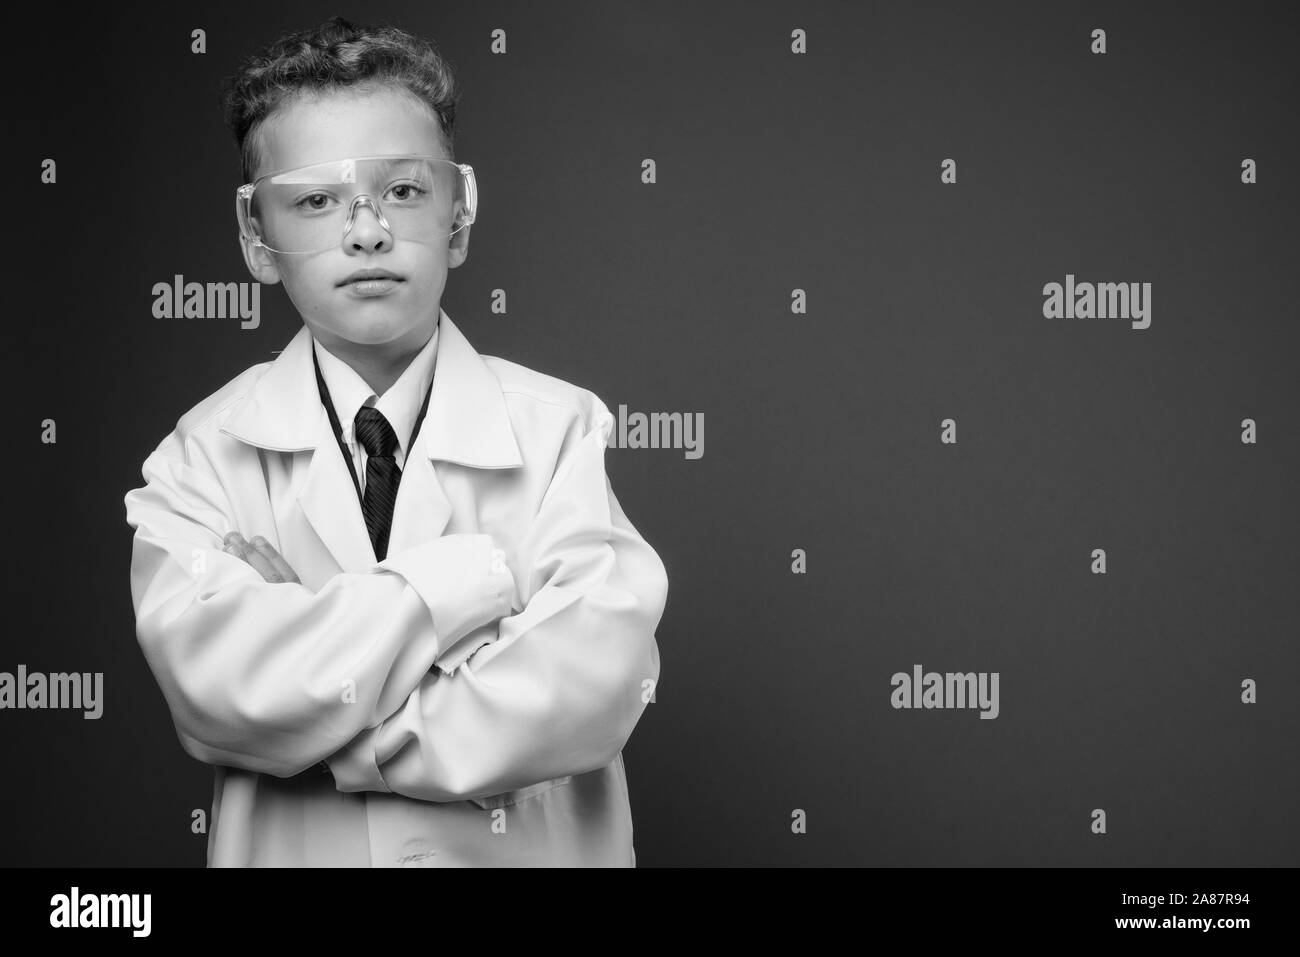 Jeune garçon comme médecin portant des lunettes en noir et blanc Banque D'Images